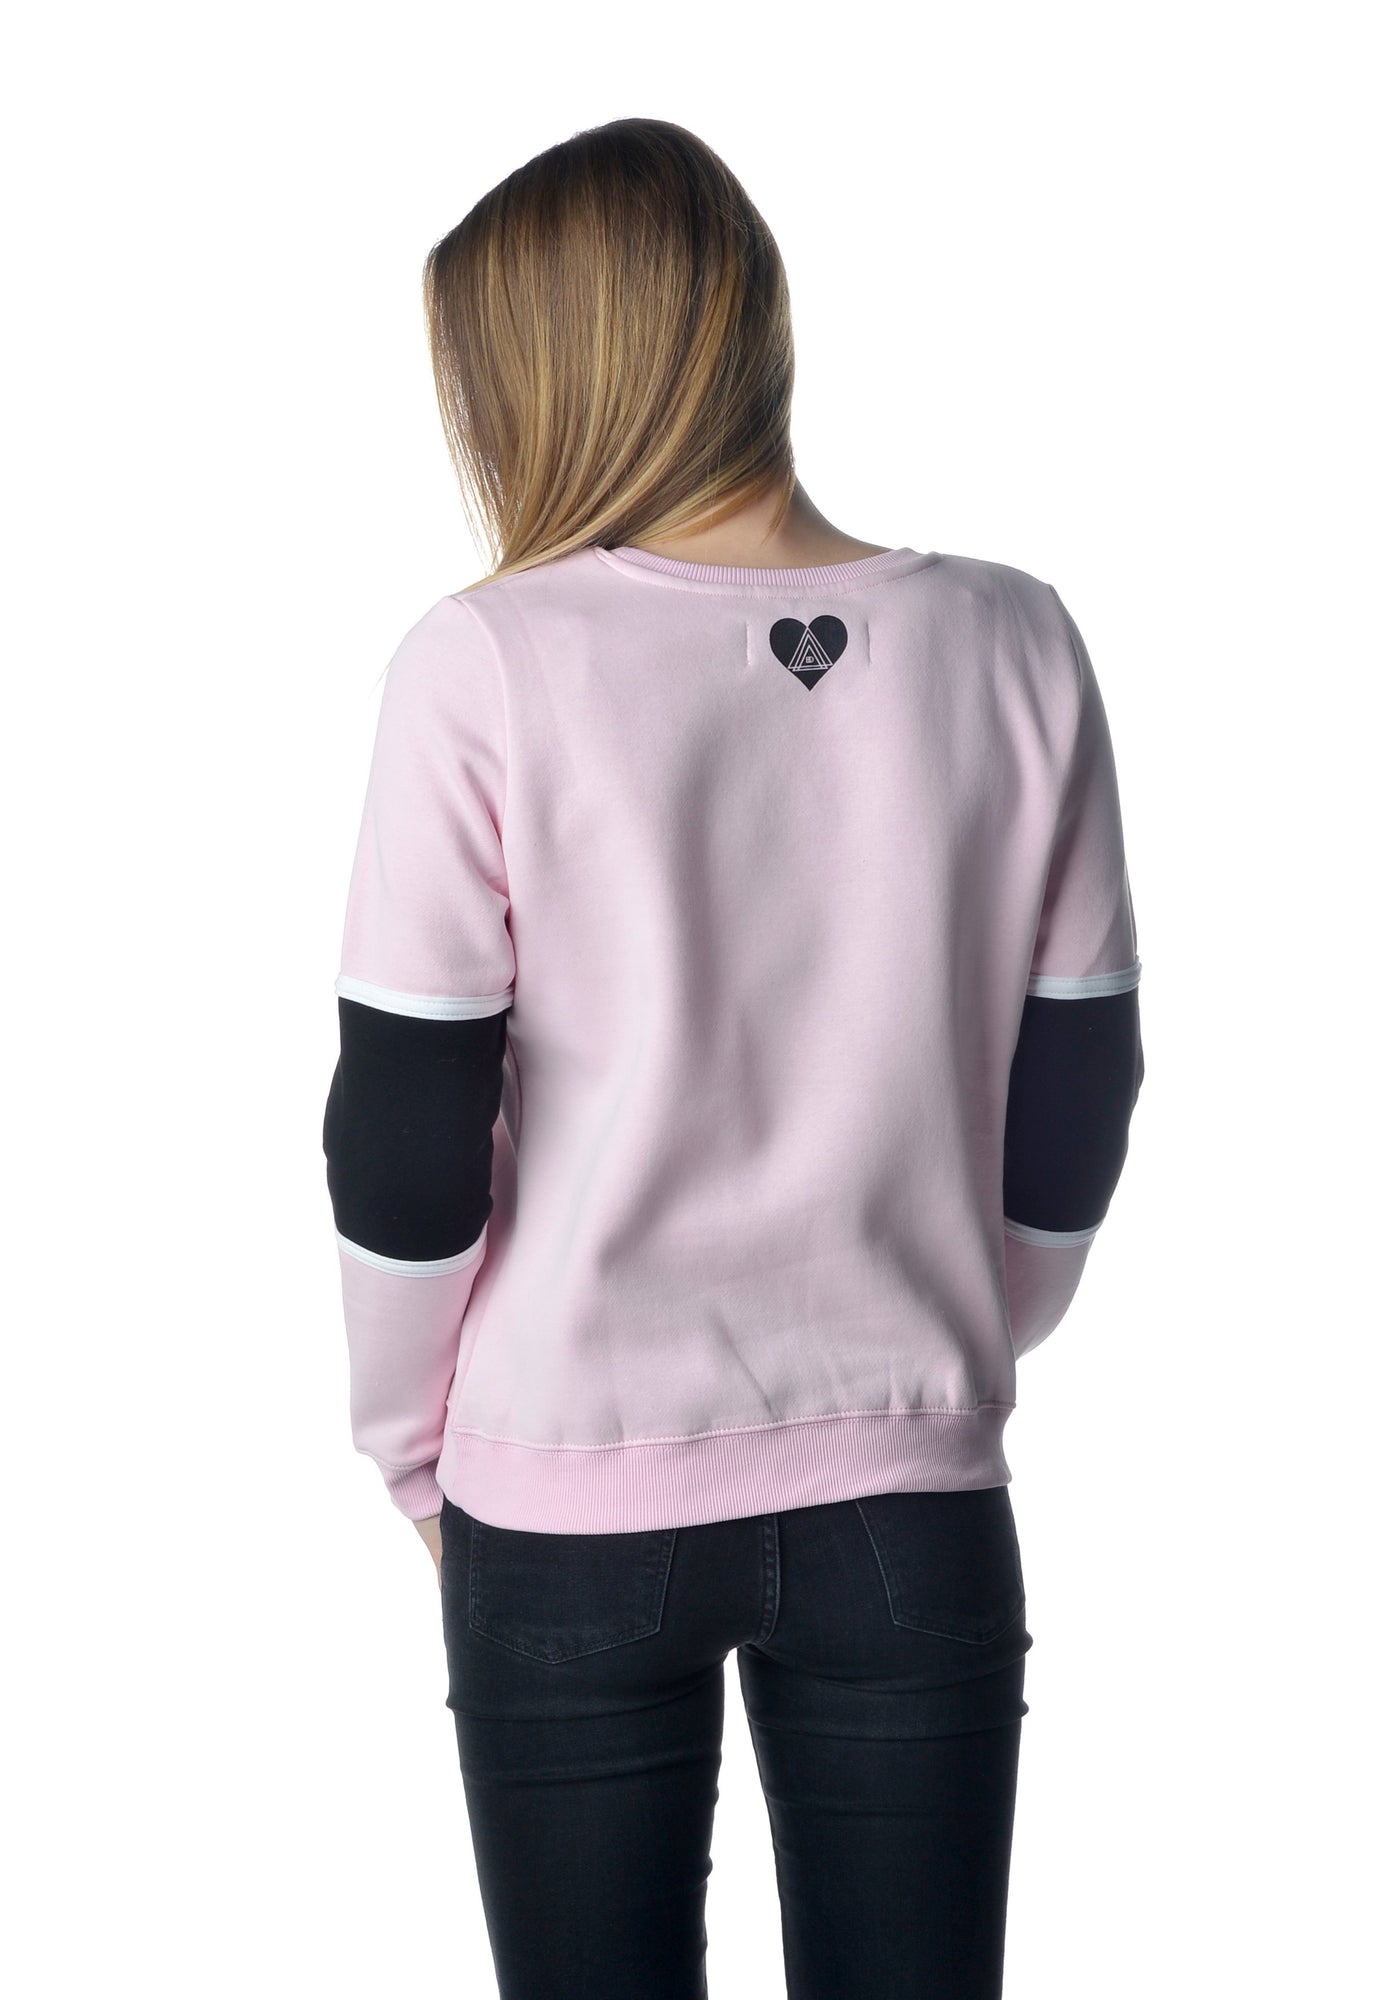 Zefix Sweater Girls rosa